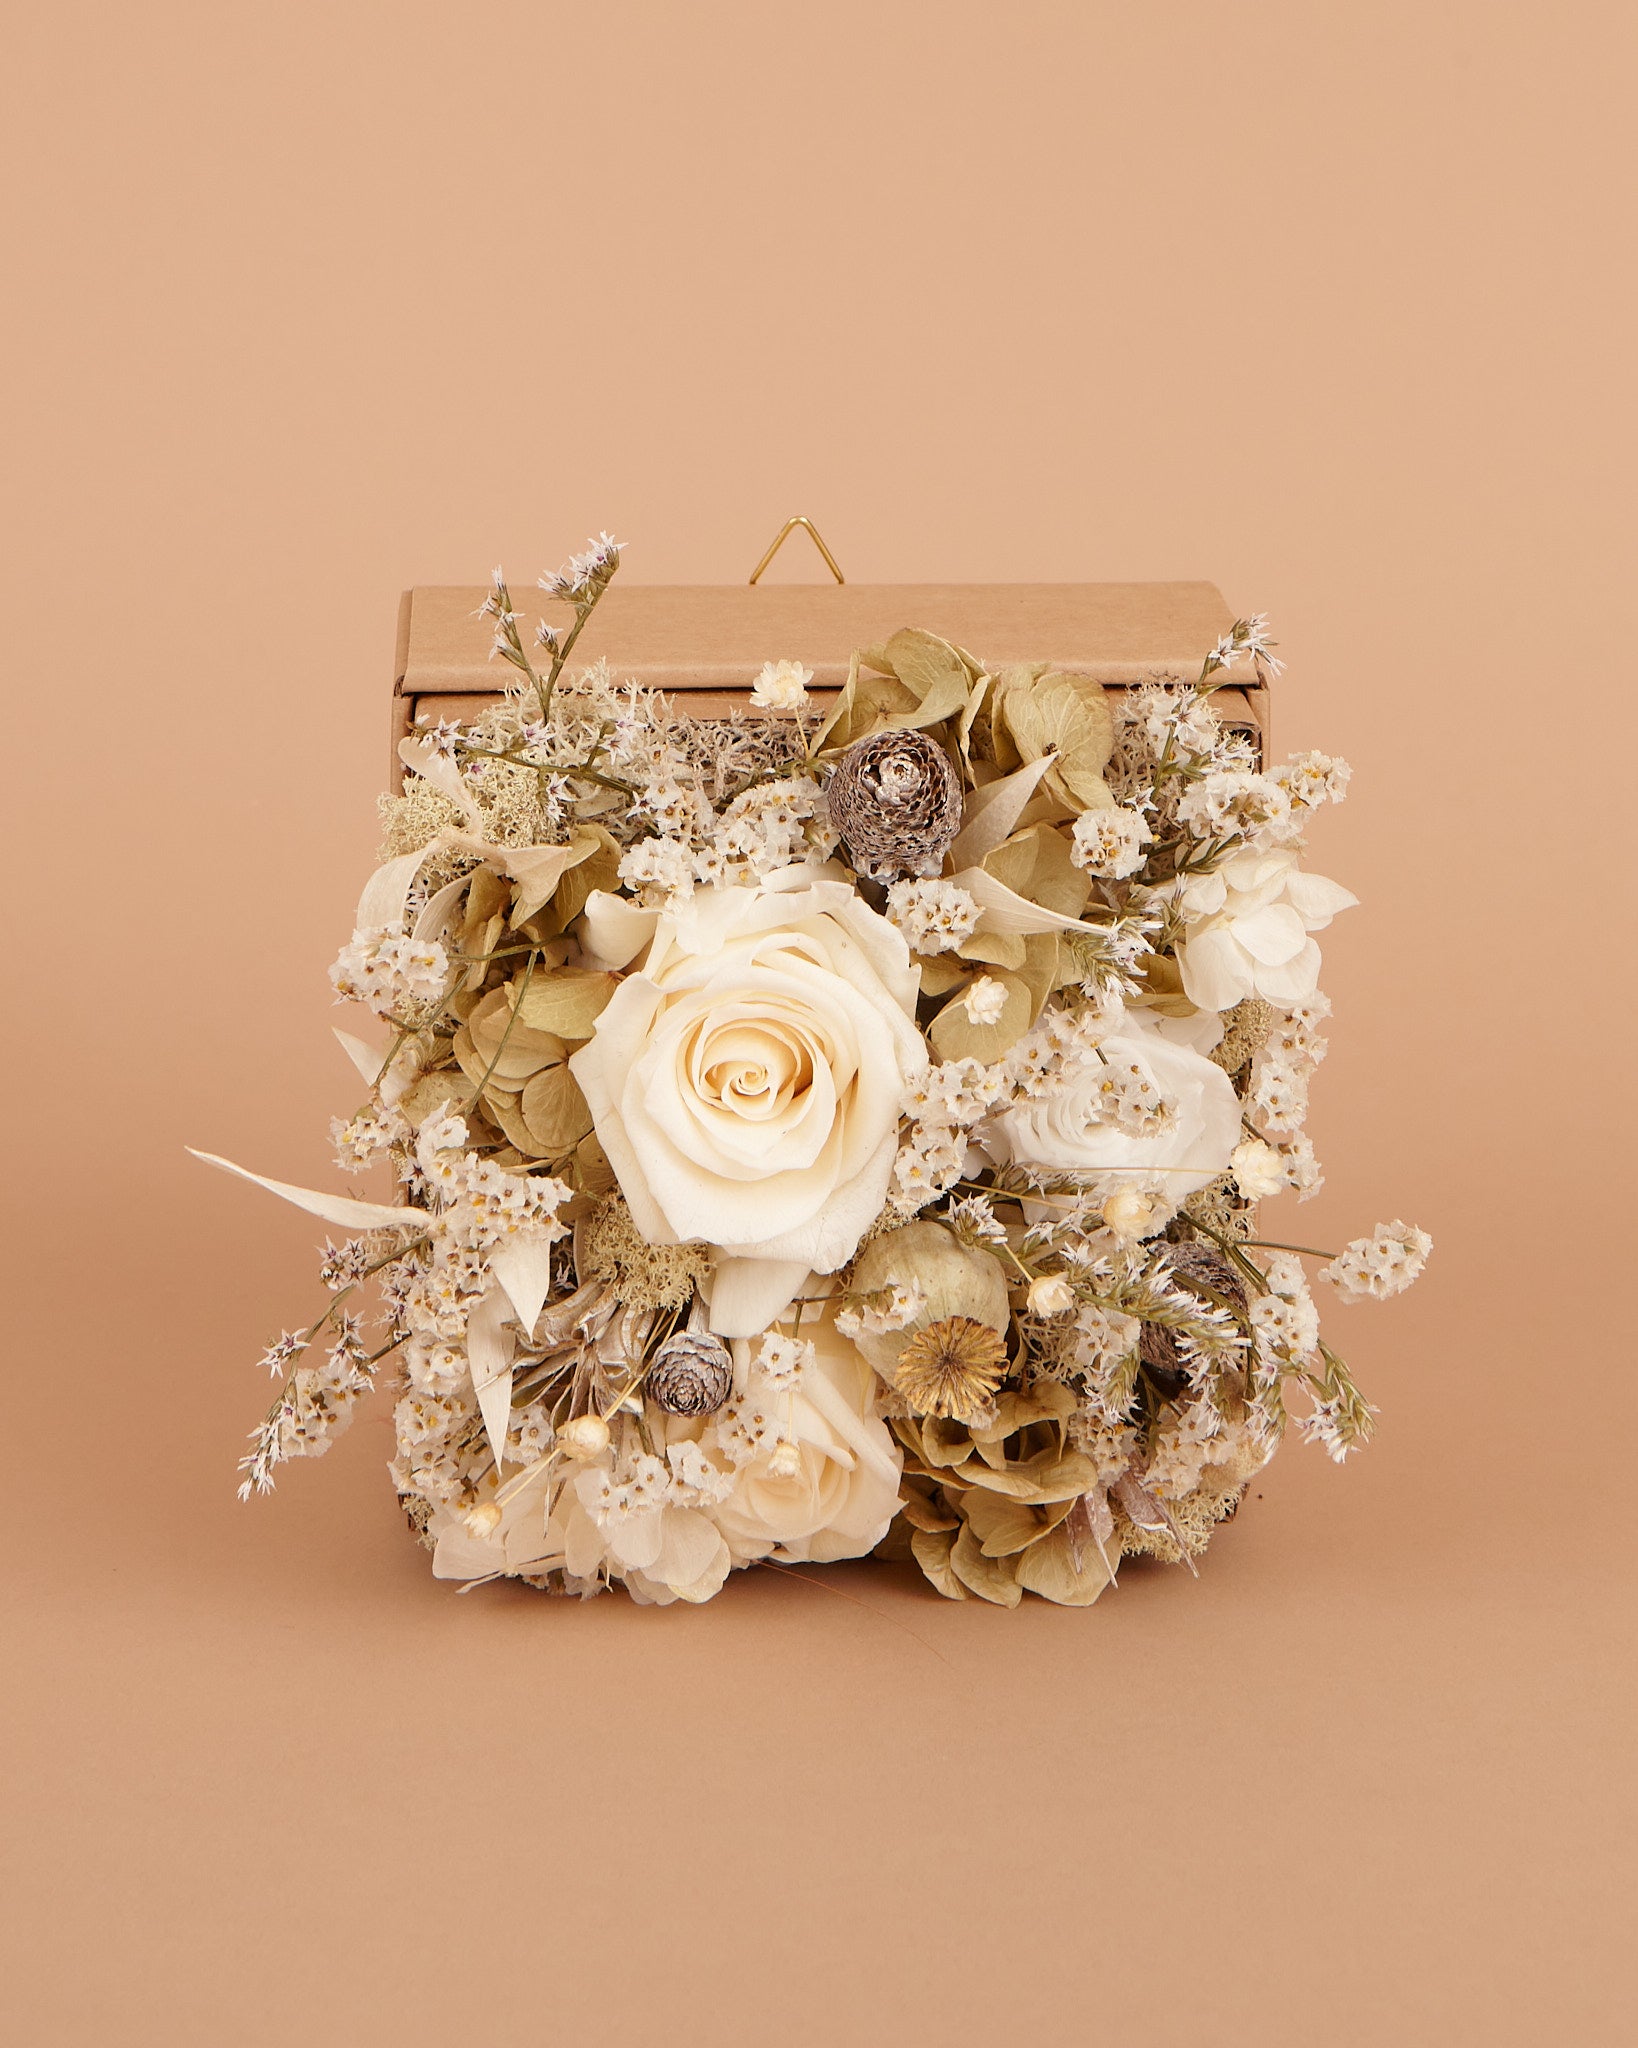 Vista frontale di Quadro Fiorito con rose di color bianco champagne e fiori stabilizzati e secchi